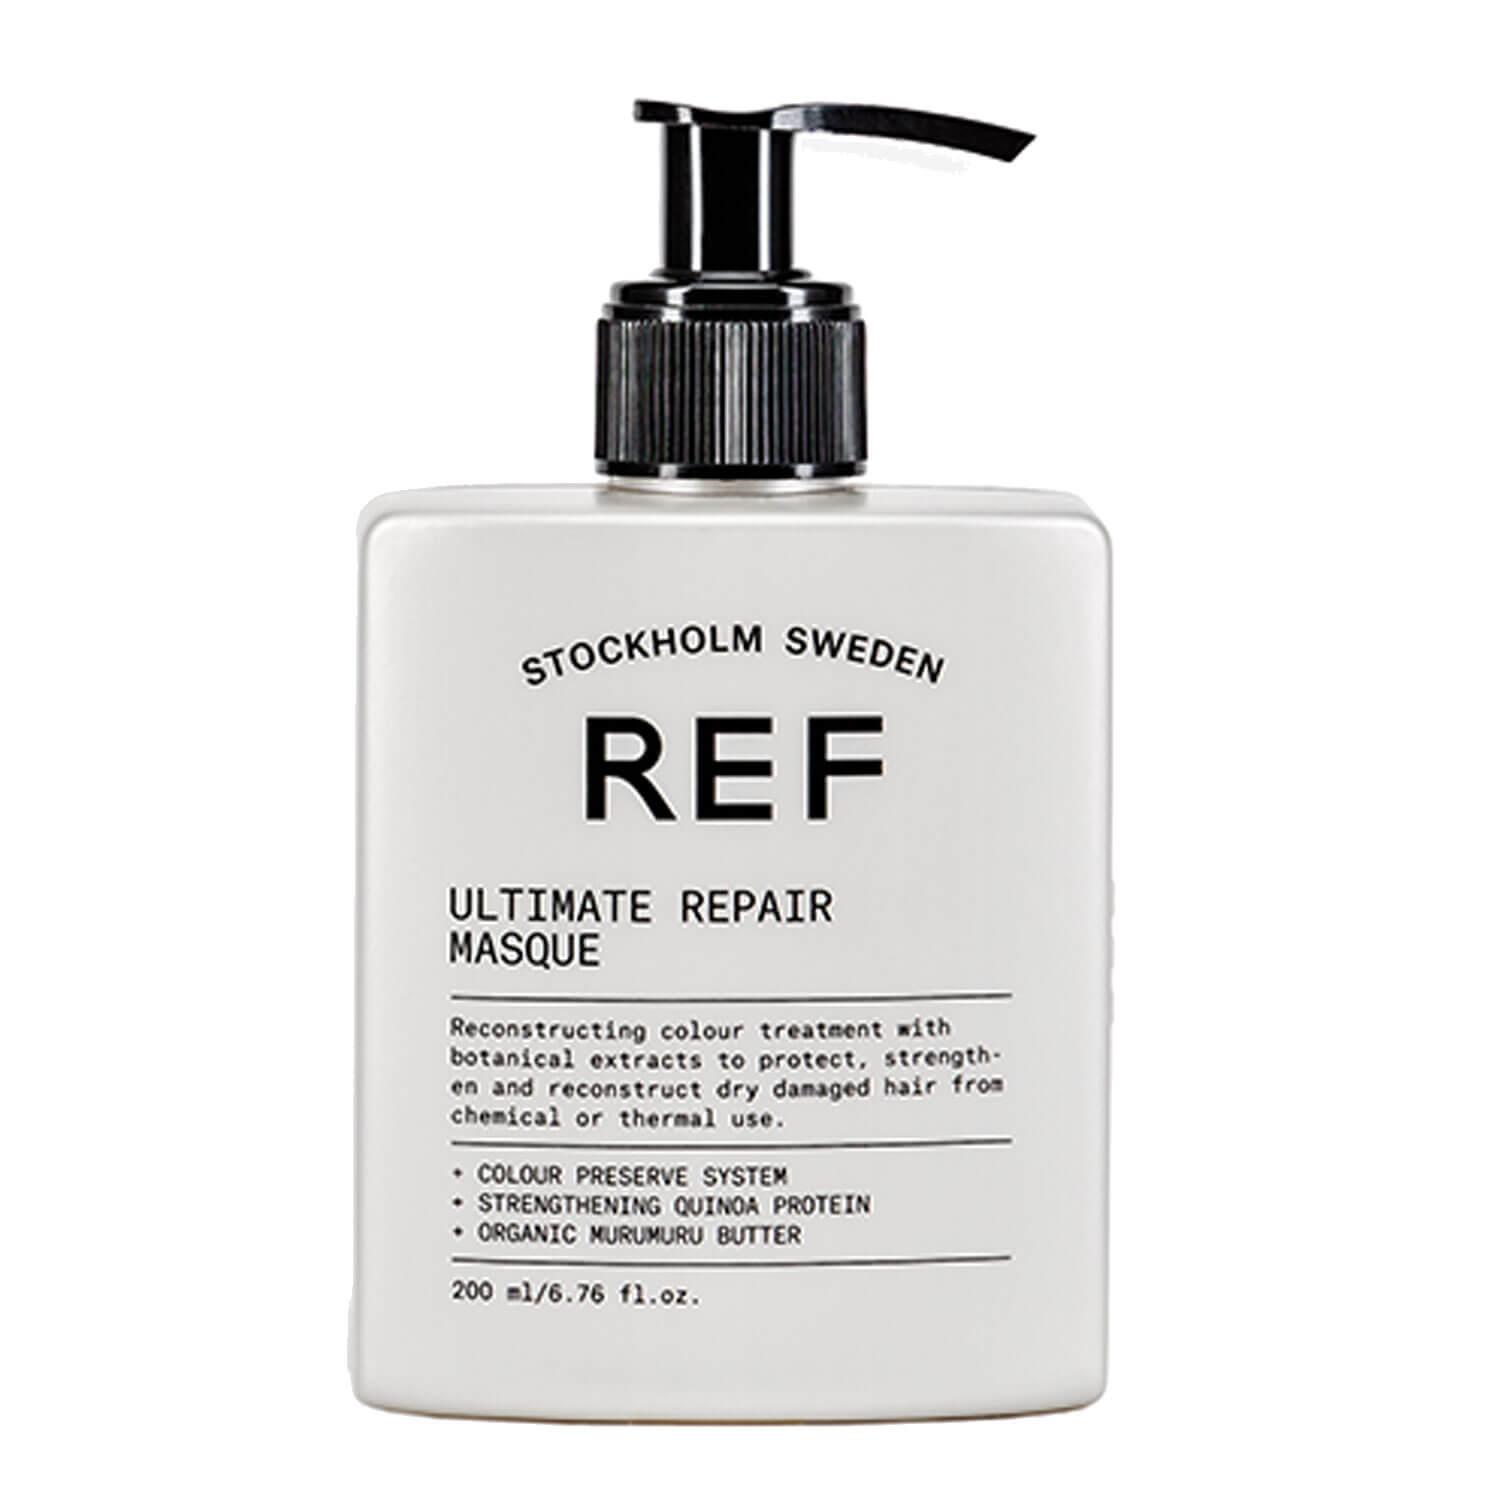 REF Treatment - Ultimate Repair Masque